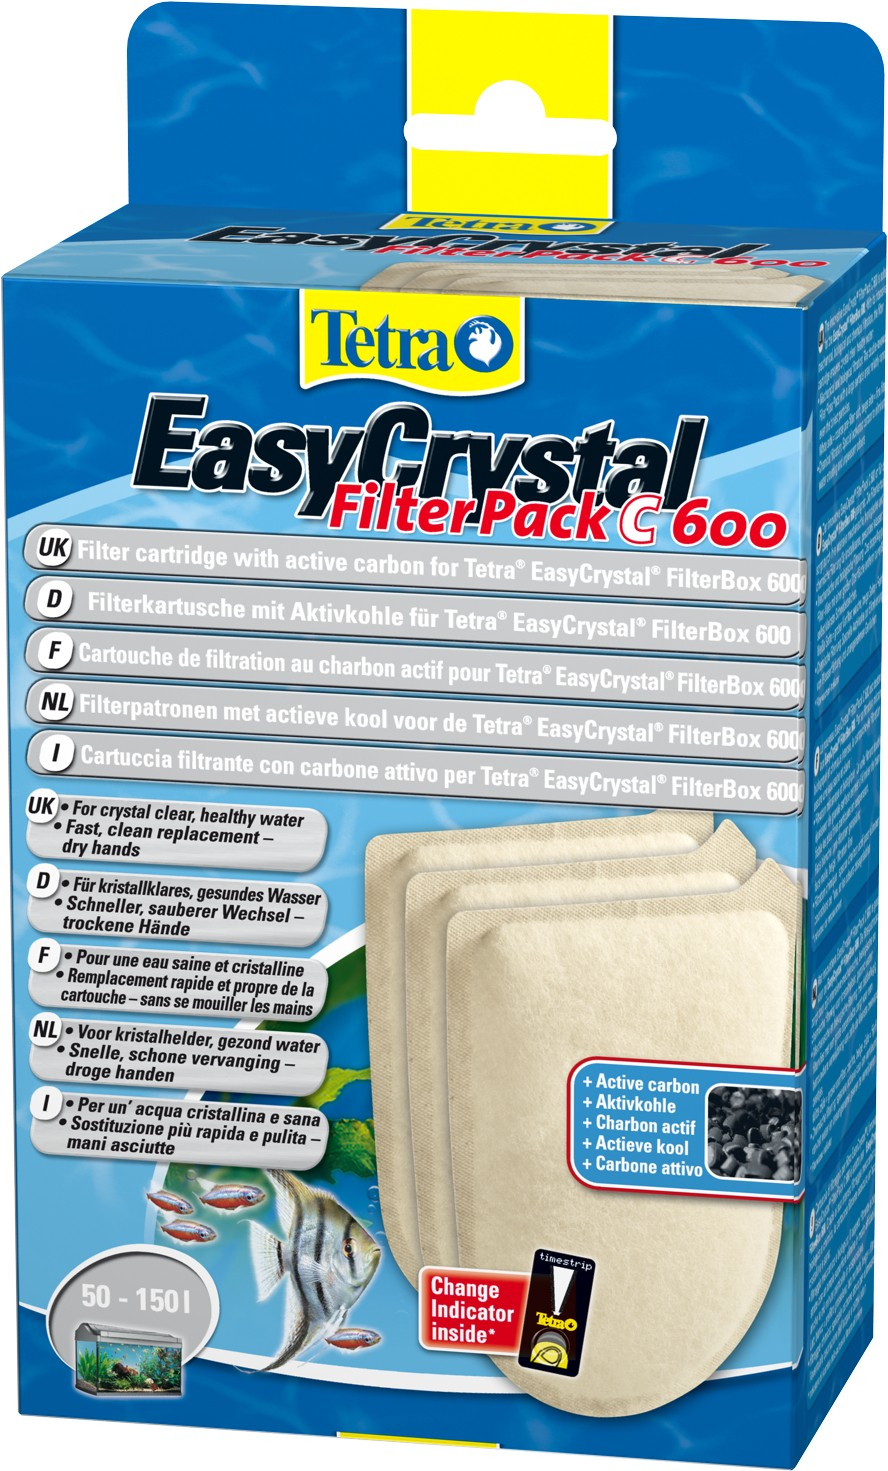 Cartucho de filtração com carvão ativo Tetra EasyCrystal filterpack C 600